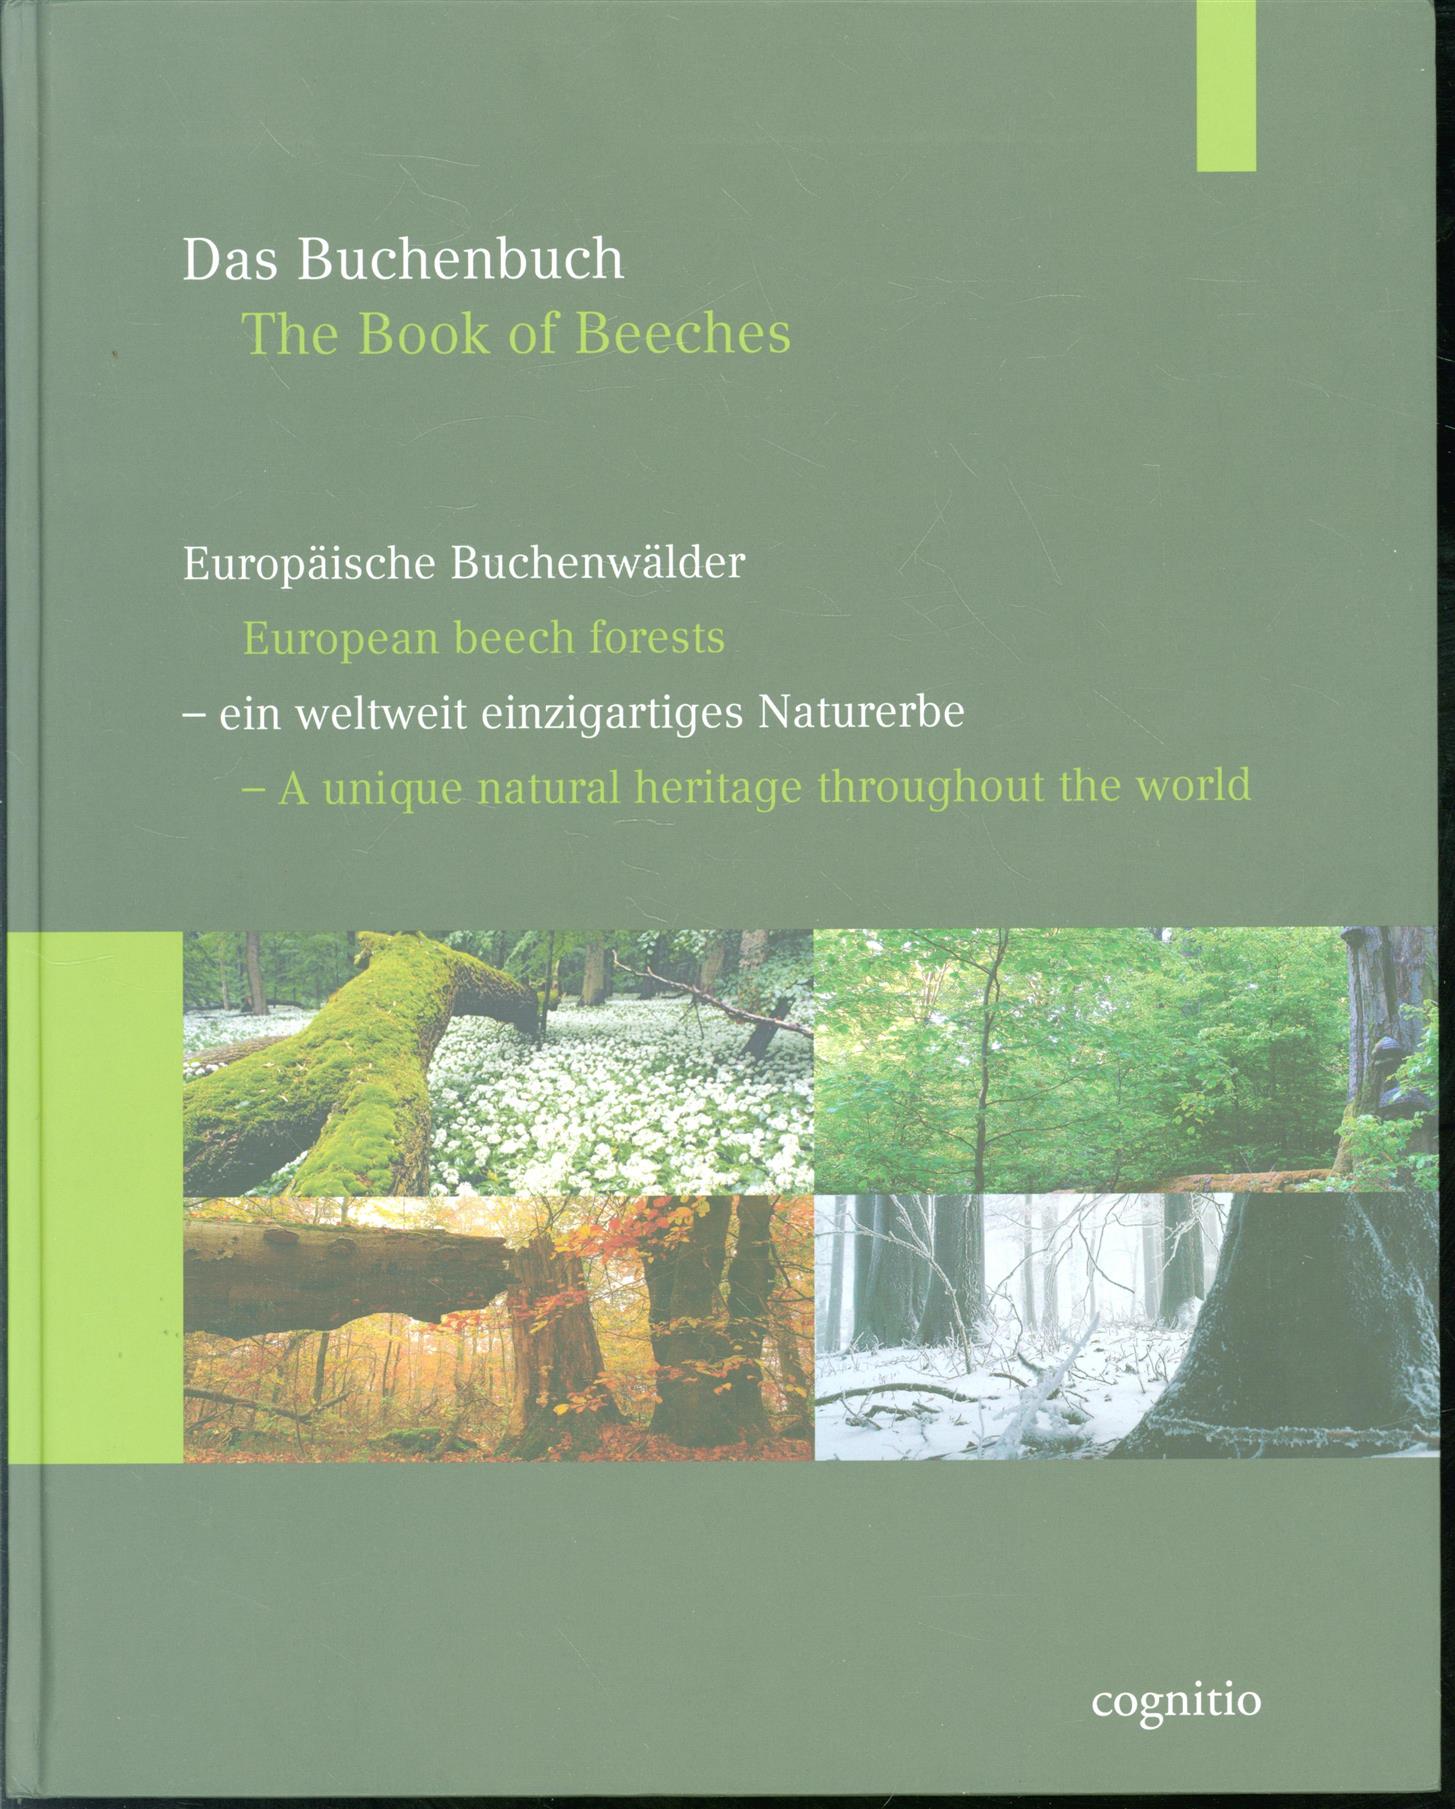 n.n. - Das Buchenbuch: europäische Buchenwälder - ein weltweit einzigartiges Naturerbe = The book of beeches.